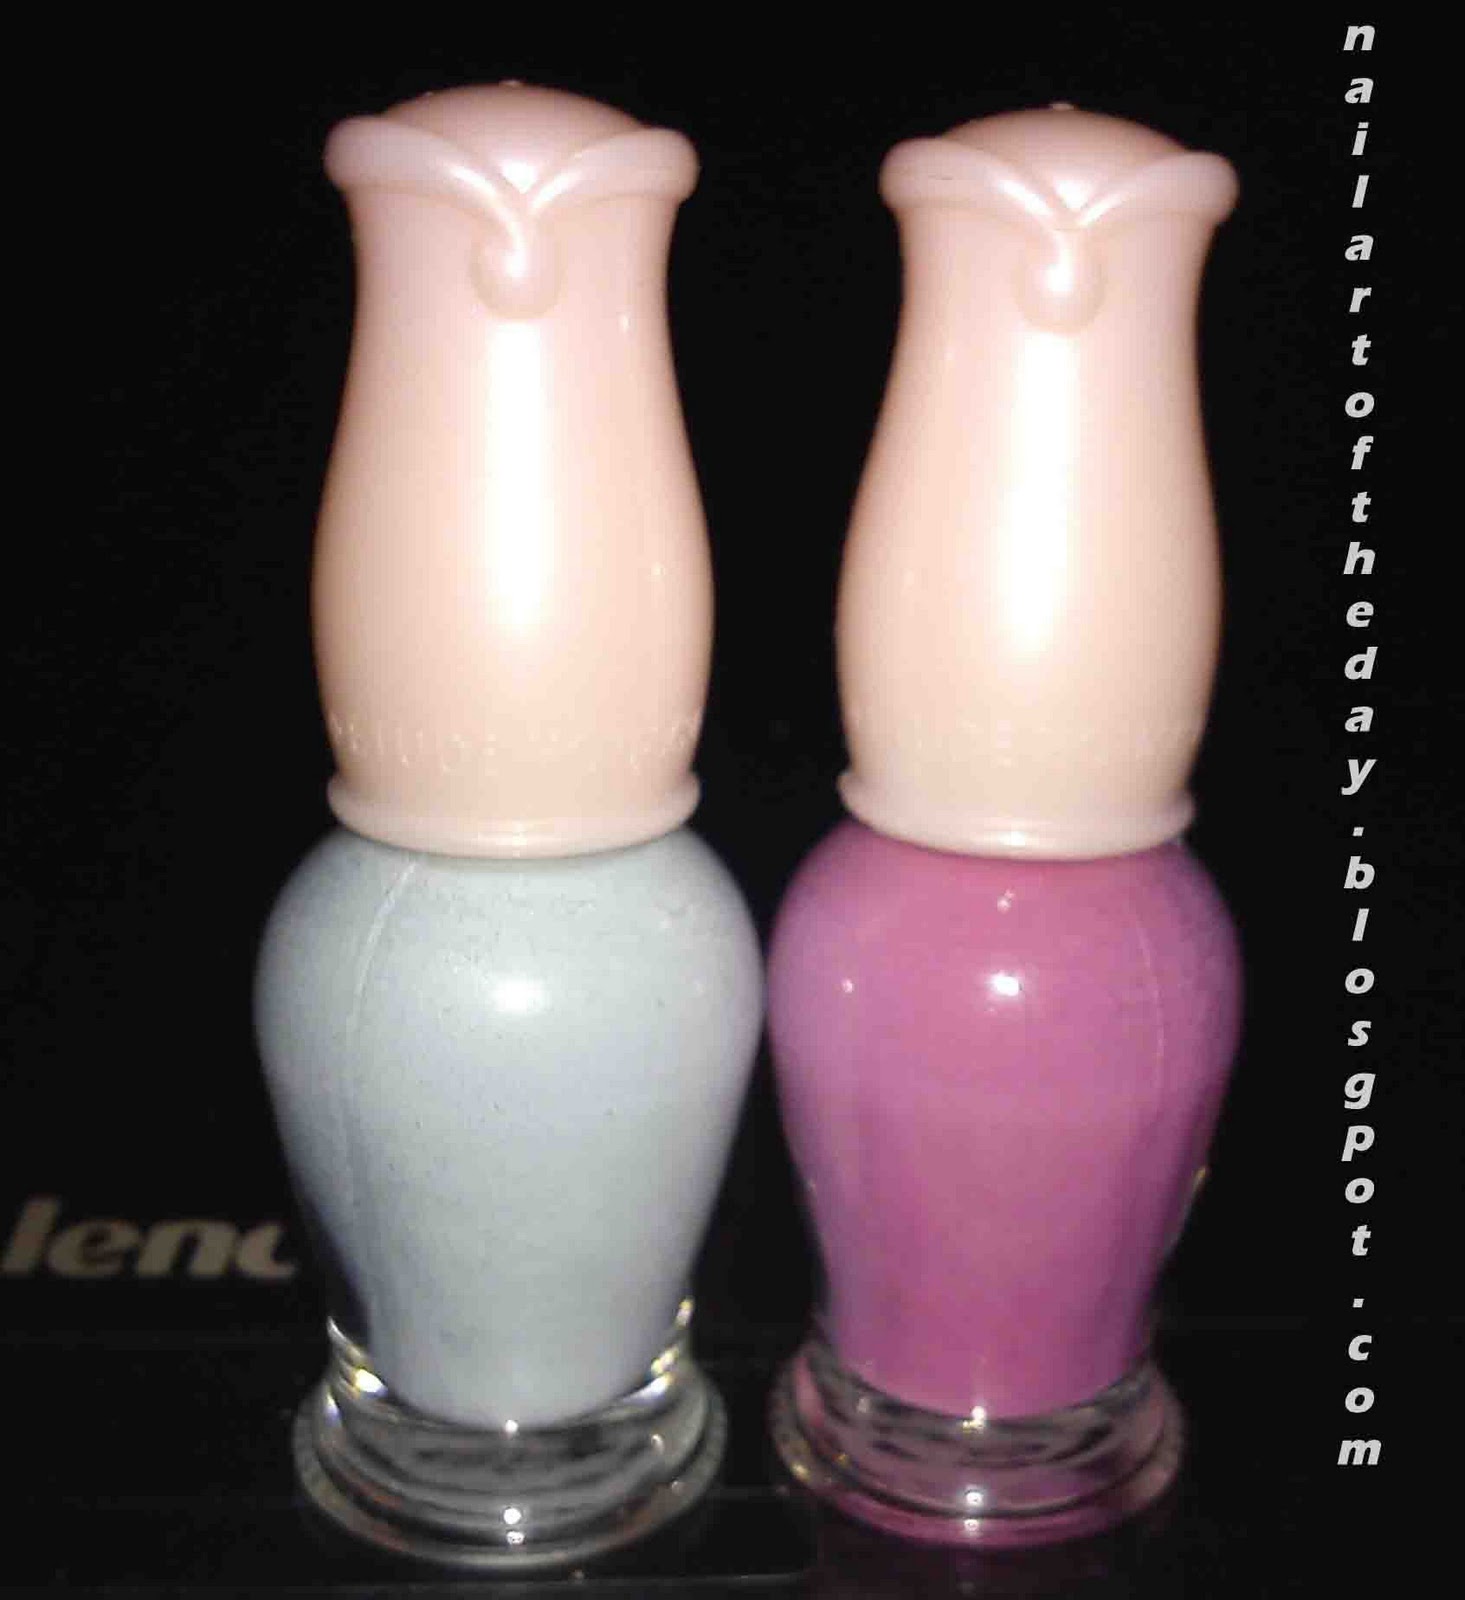 crackle nail polish,  nail polish colors,  neon nail polish,  nail polish bottle, spilled nail polish,  bright nail polish-92